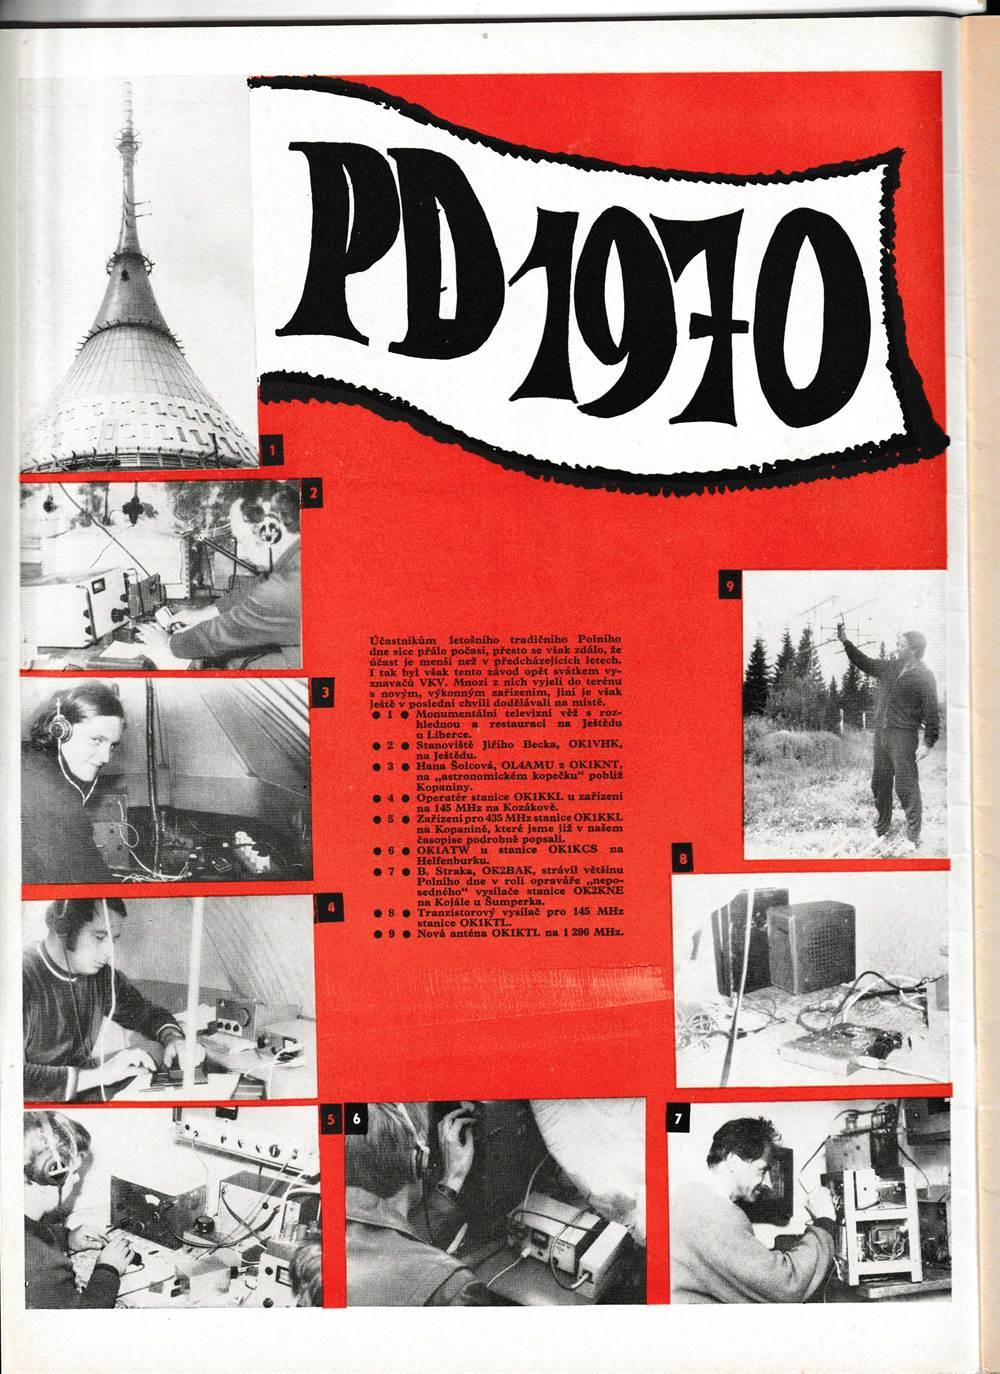 Amatérské Radio 10.  XIX ČÍSLO 10 Ročník  1970